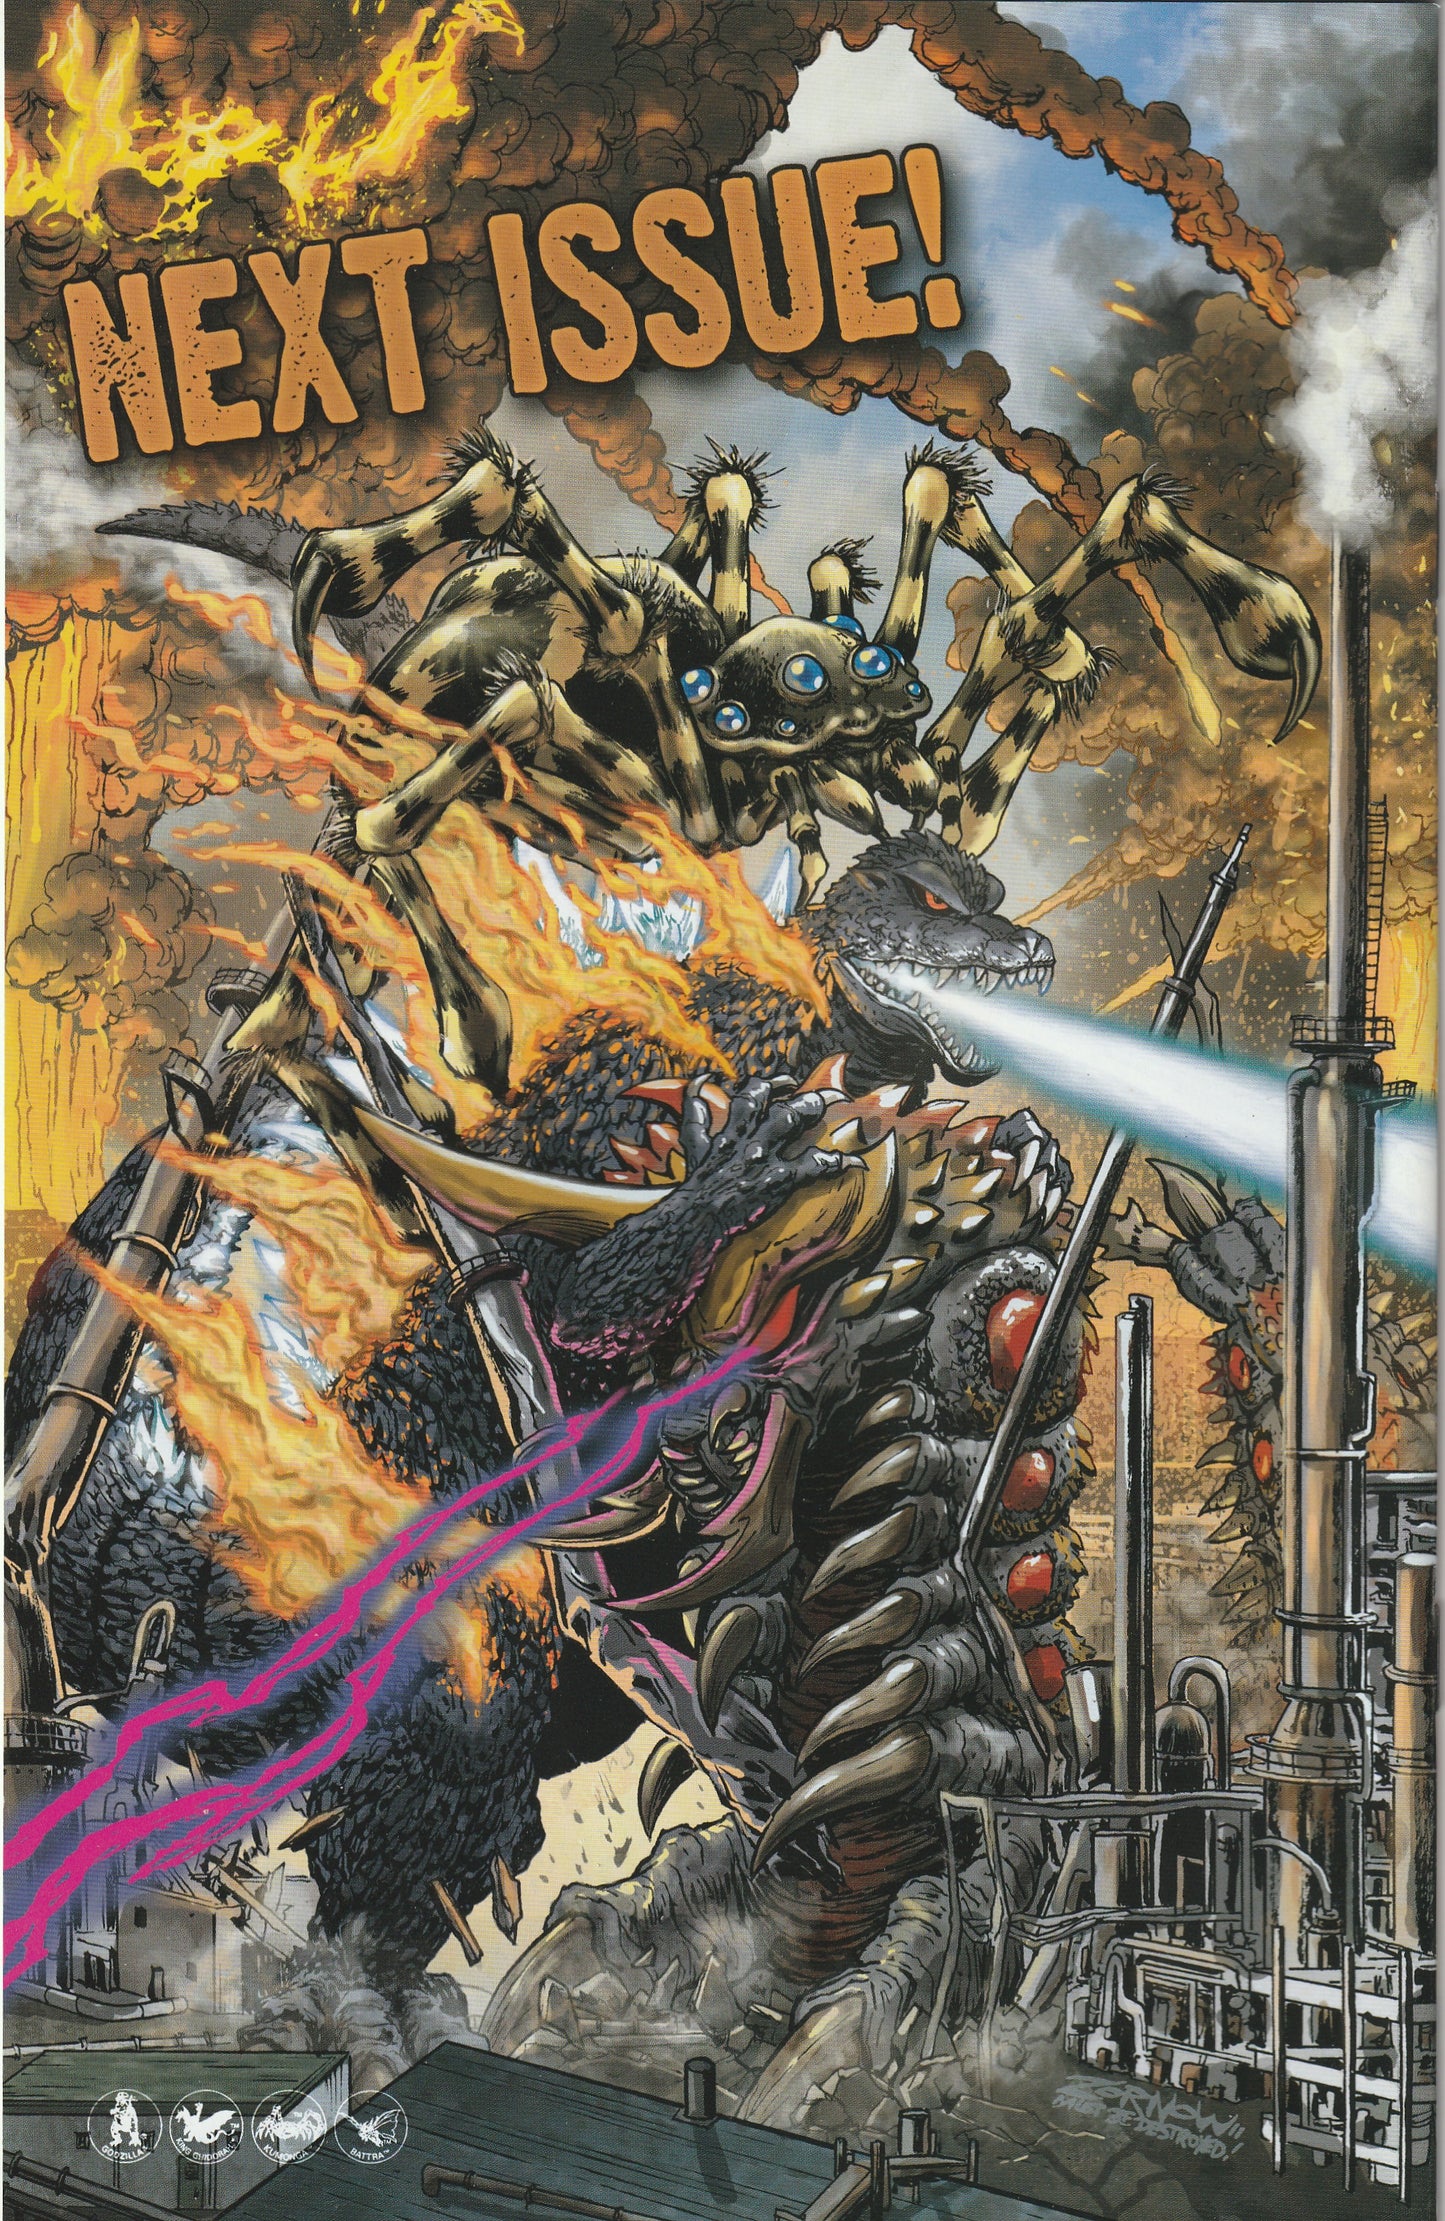 Godzilla Kingdom of Monsters #5 (2011) - Cover B by Jeff Zorrow